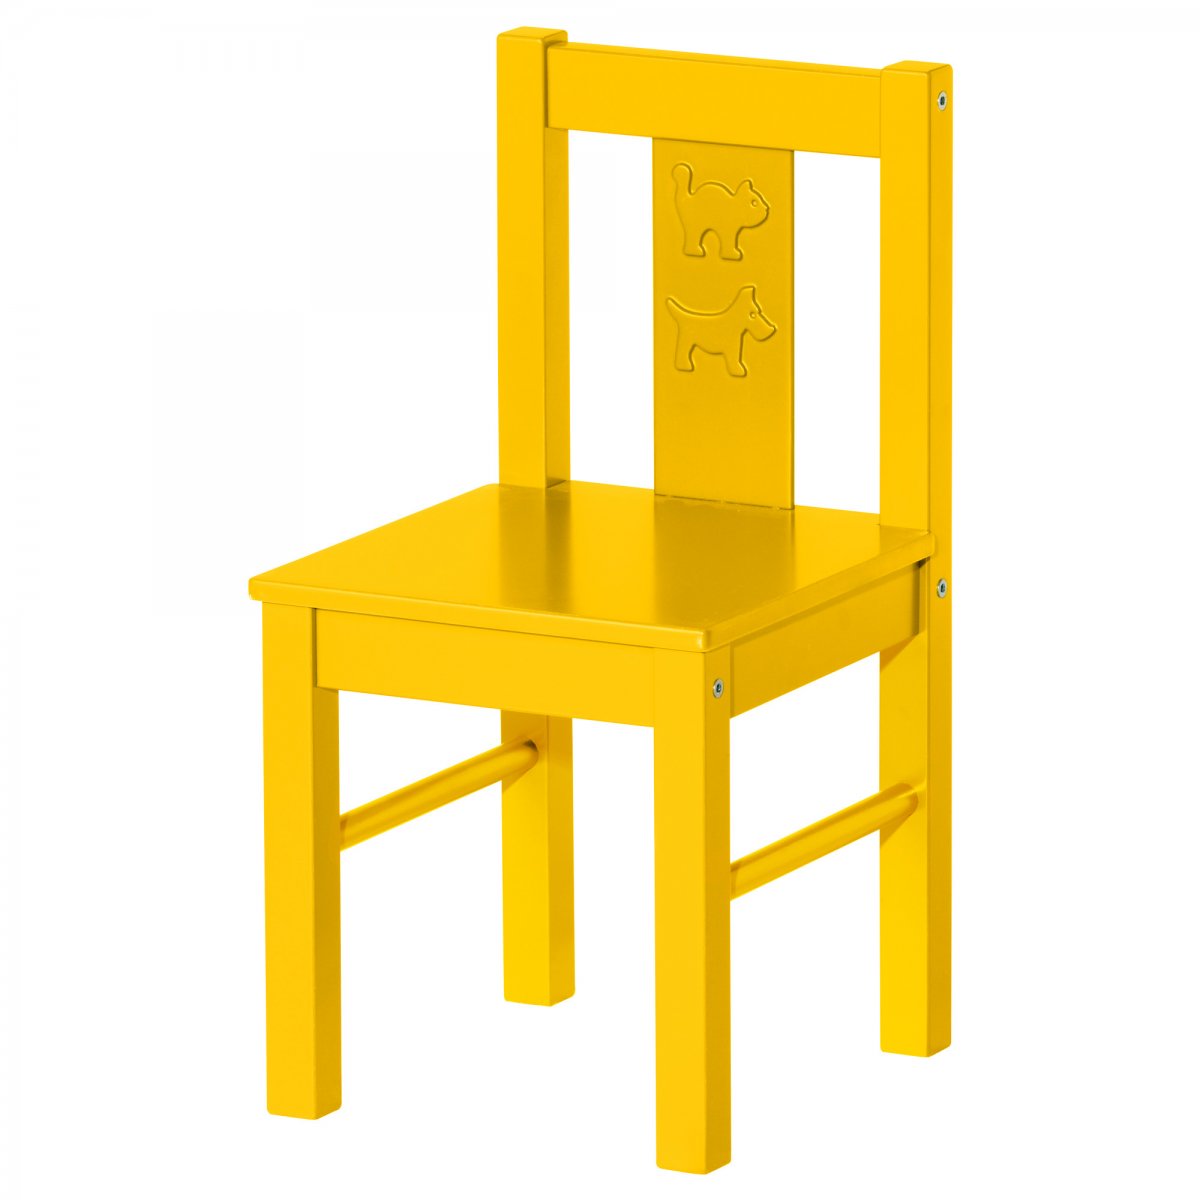 Mobiliario para niños Kritter de Ikea